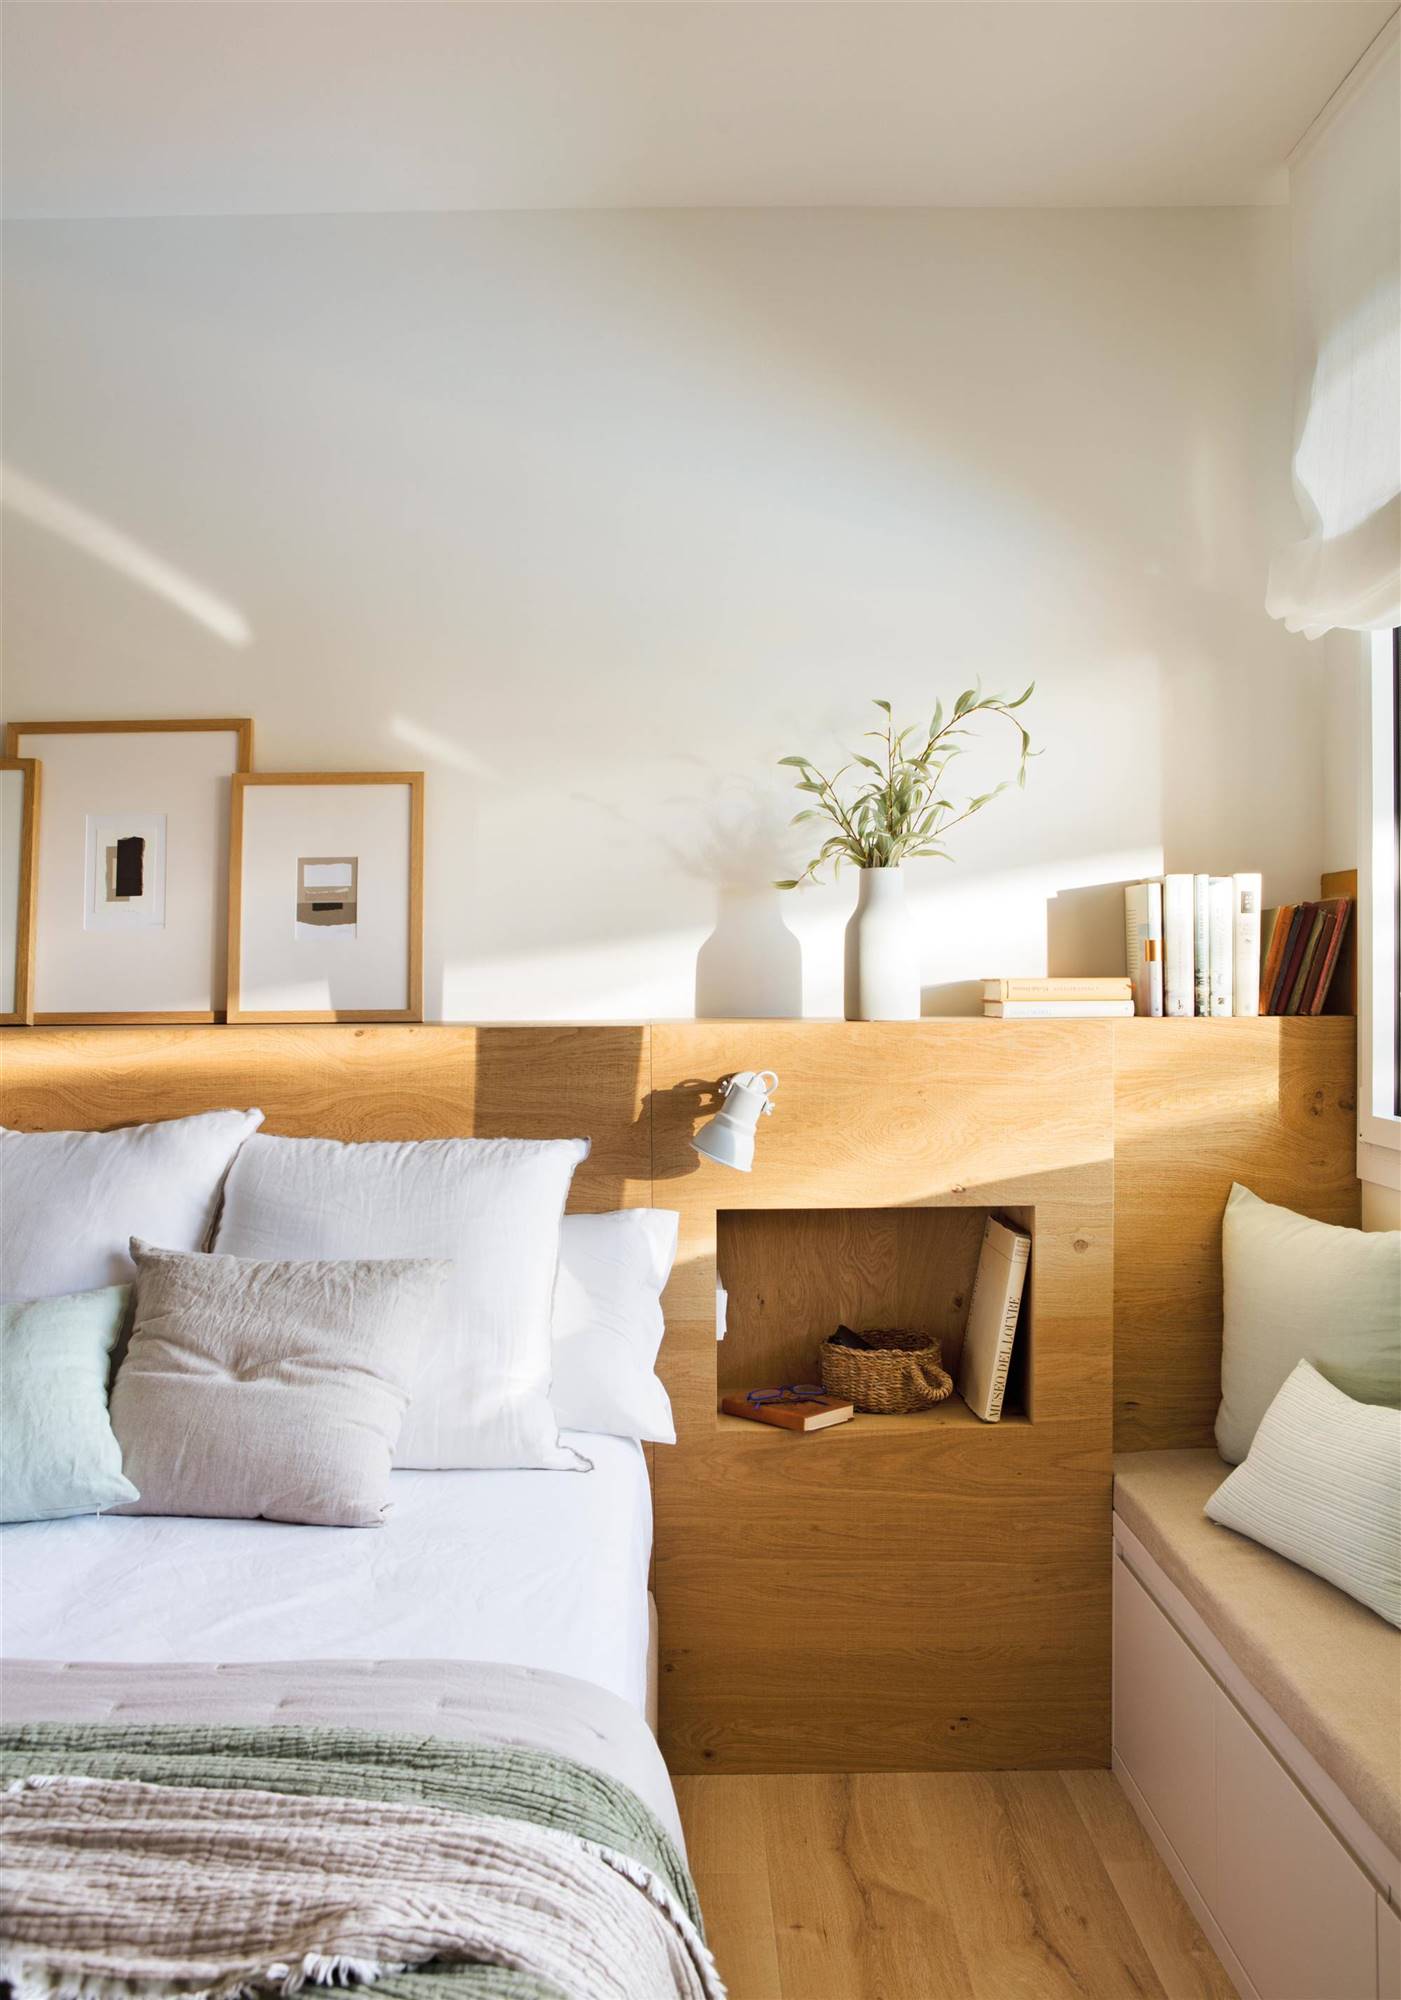 Dormitorio con cabecero de madera a medida con hornacinas como mesitas de noche.